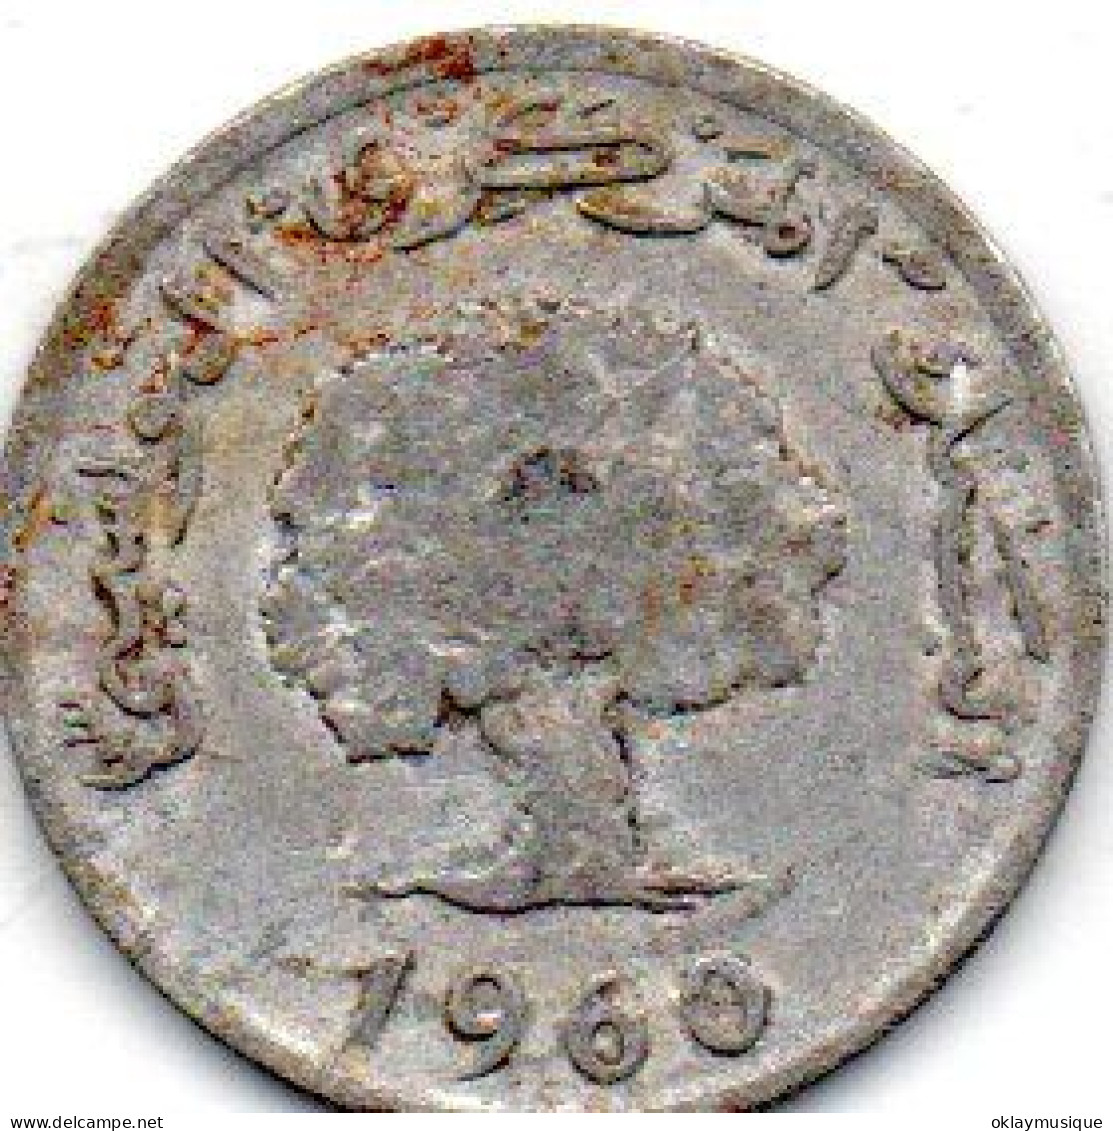 5 Millimes 1960 - Tunesië